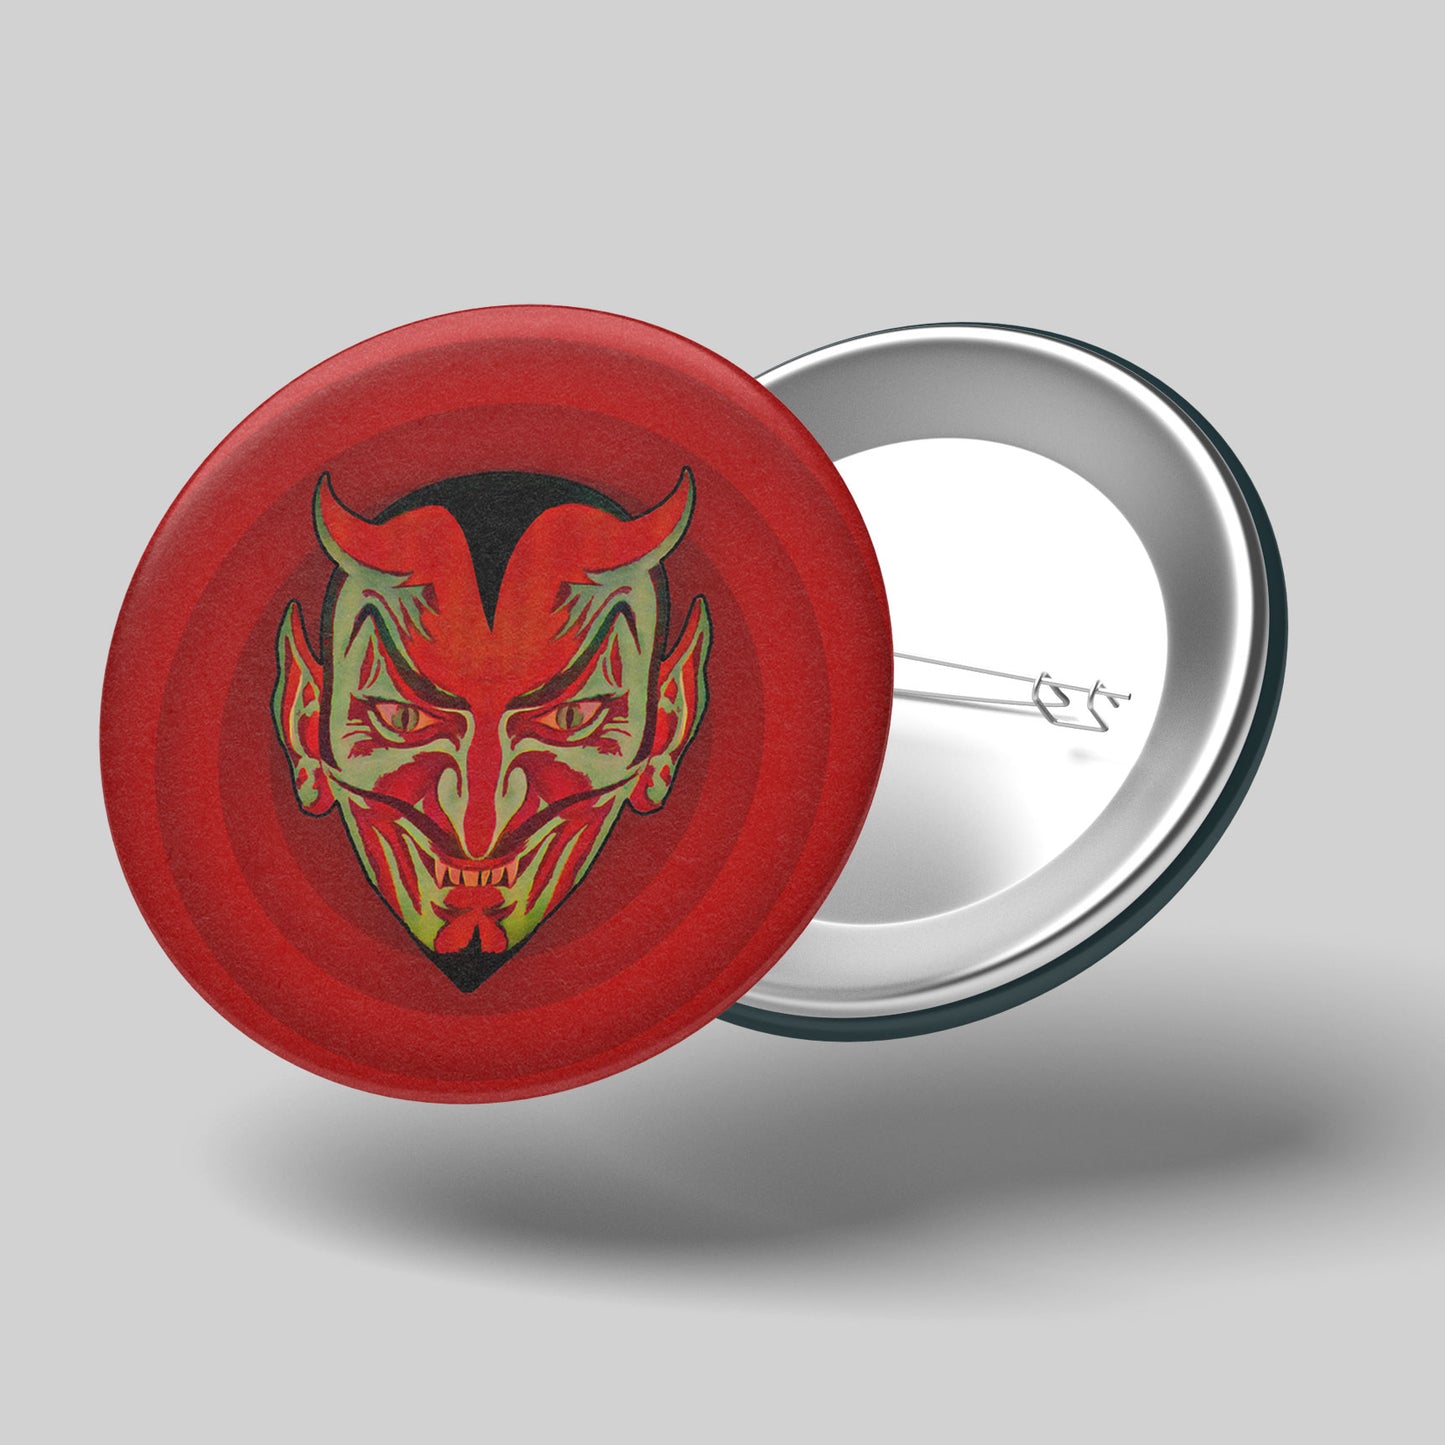 Hail Satan! button